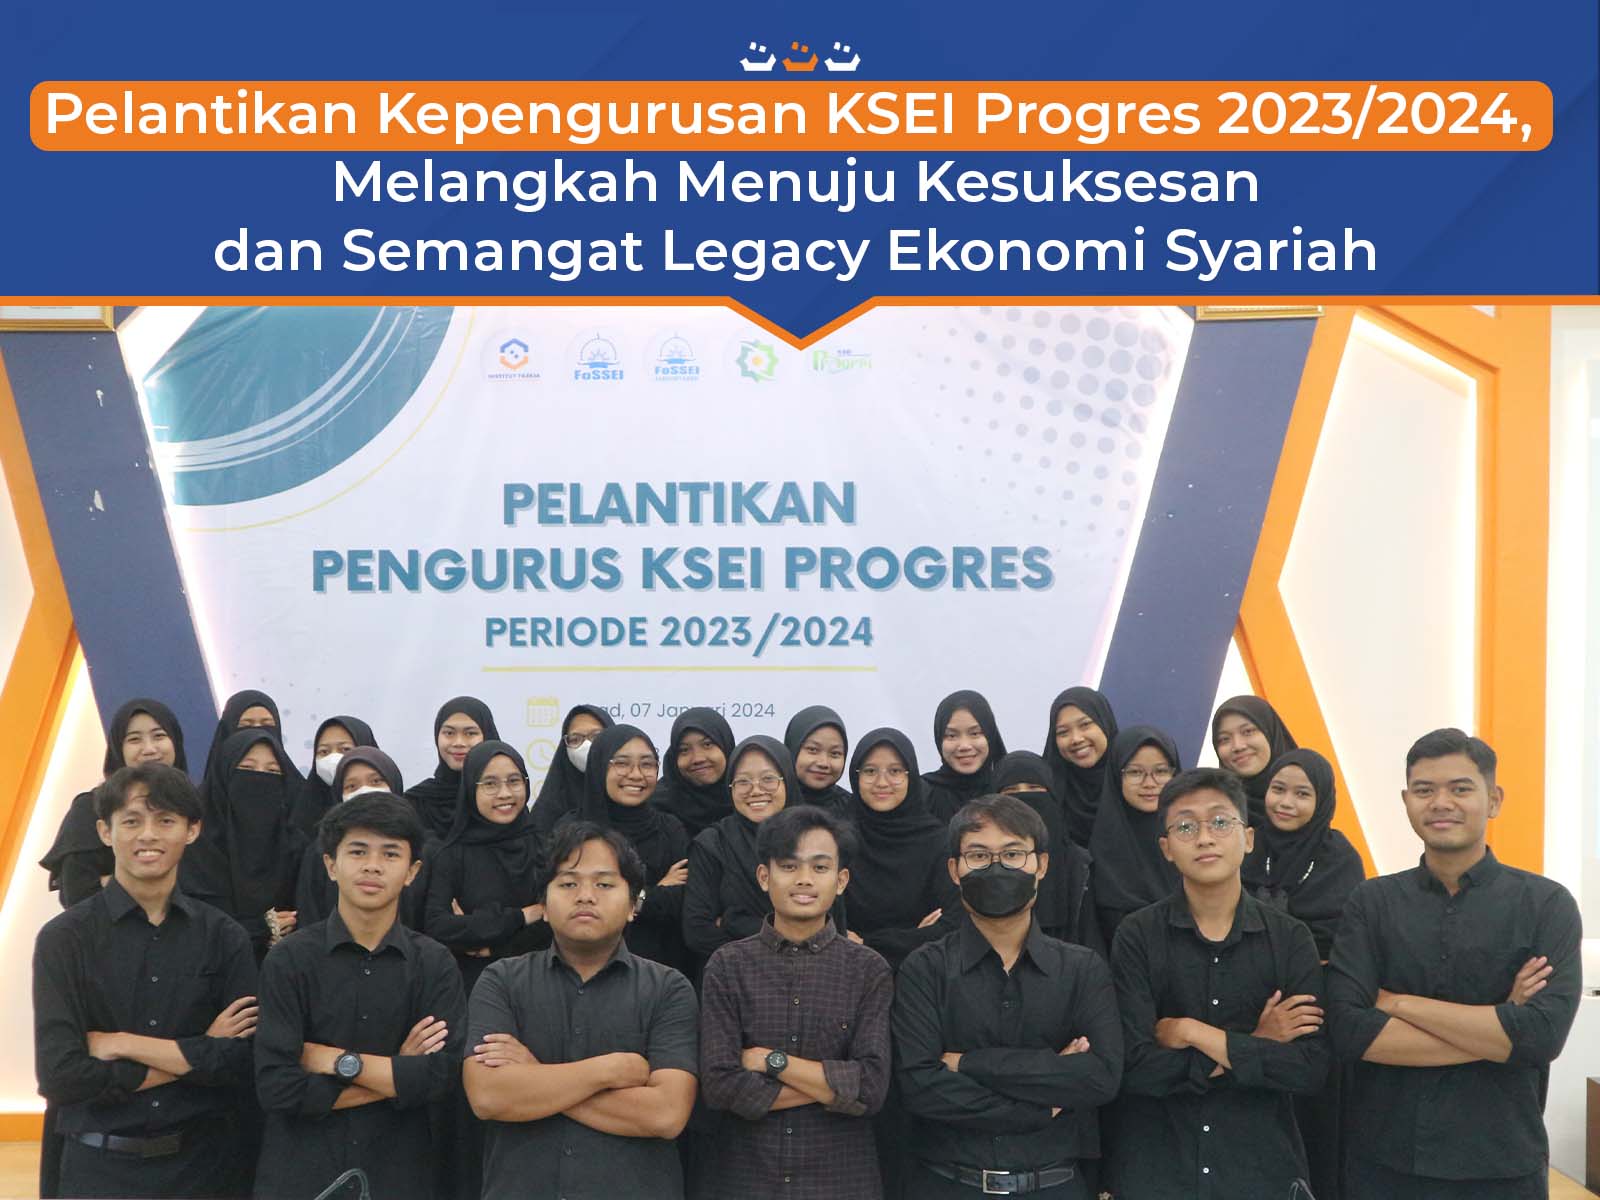 Pelantikan Kepengurusan KSEI Progres 2023/2024, Melangkah Menuju Kesuksesan dan Semangat Legacy Ekonomi Syariah